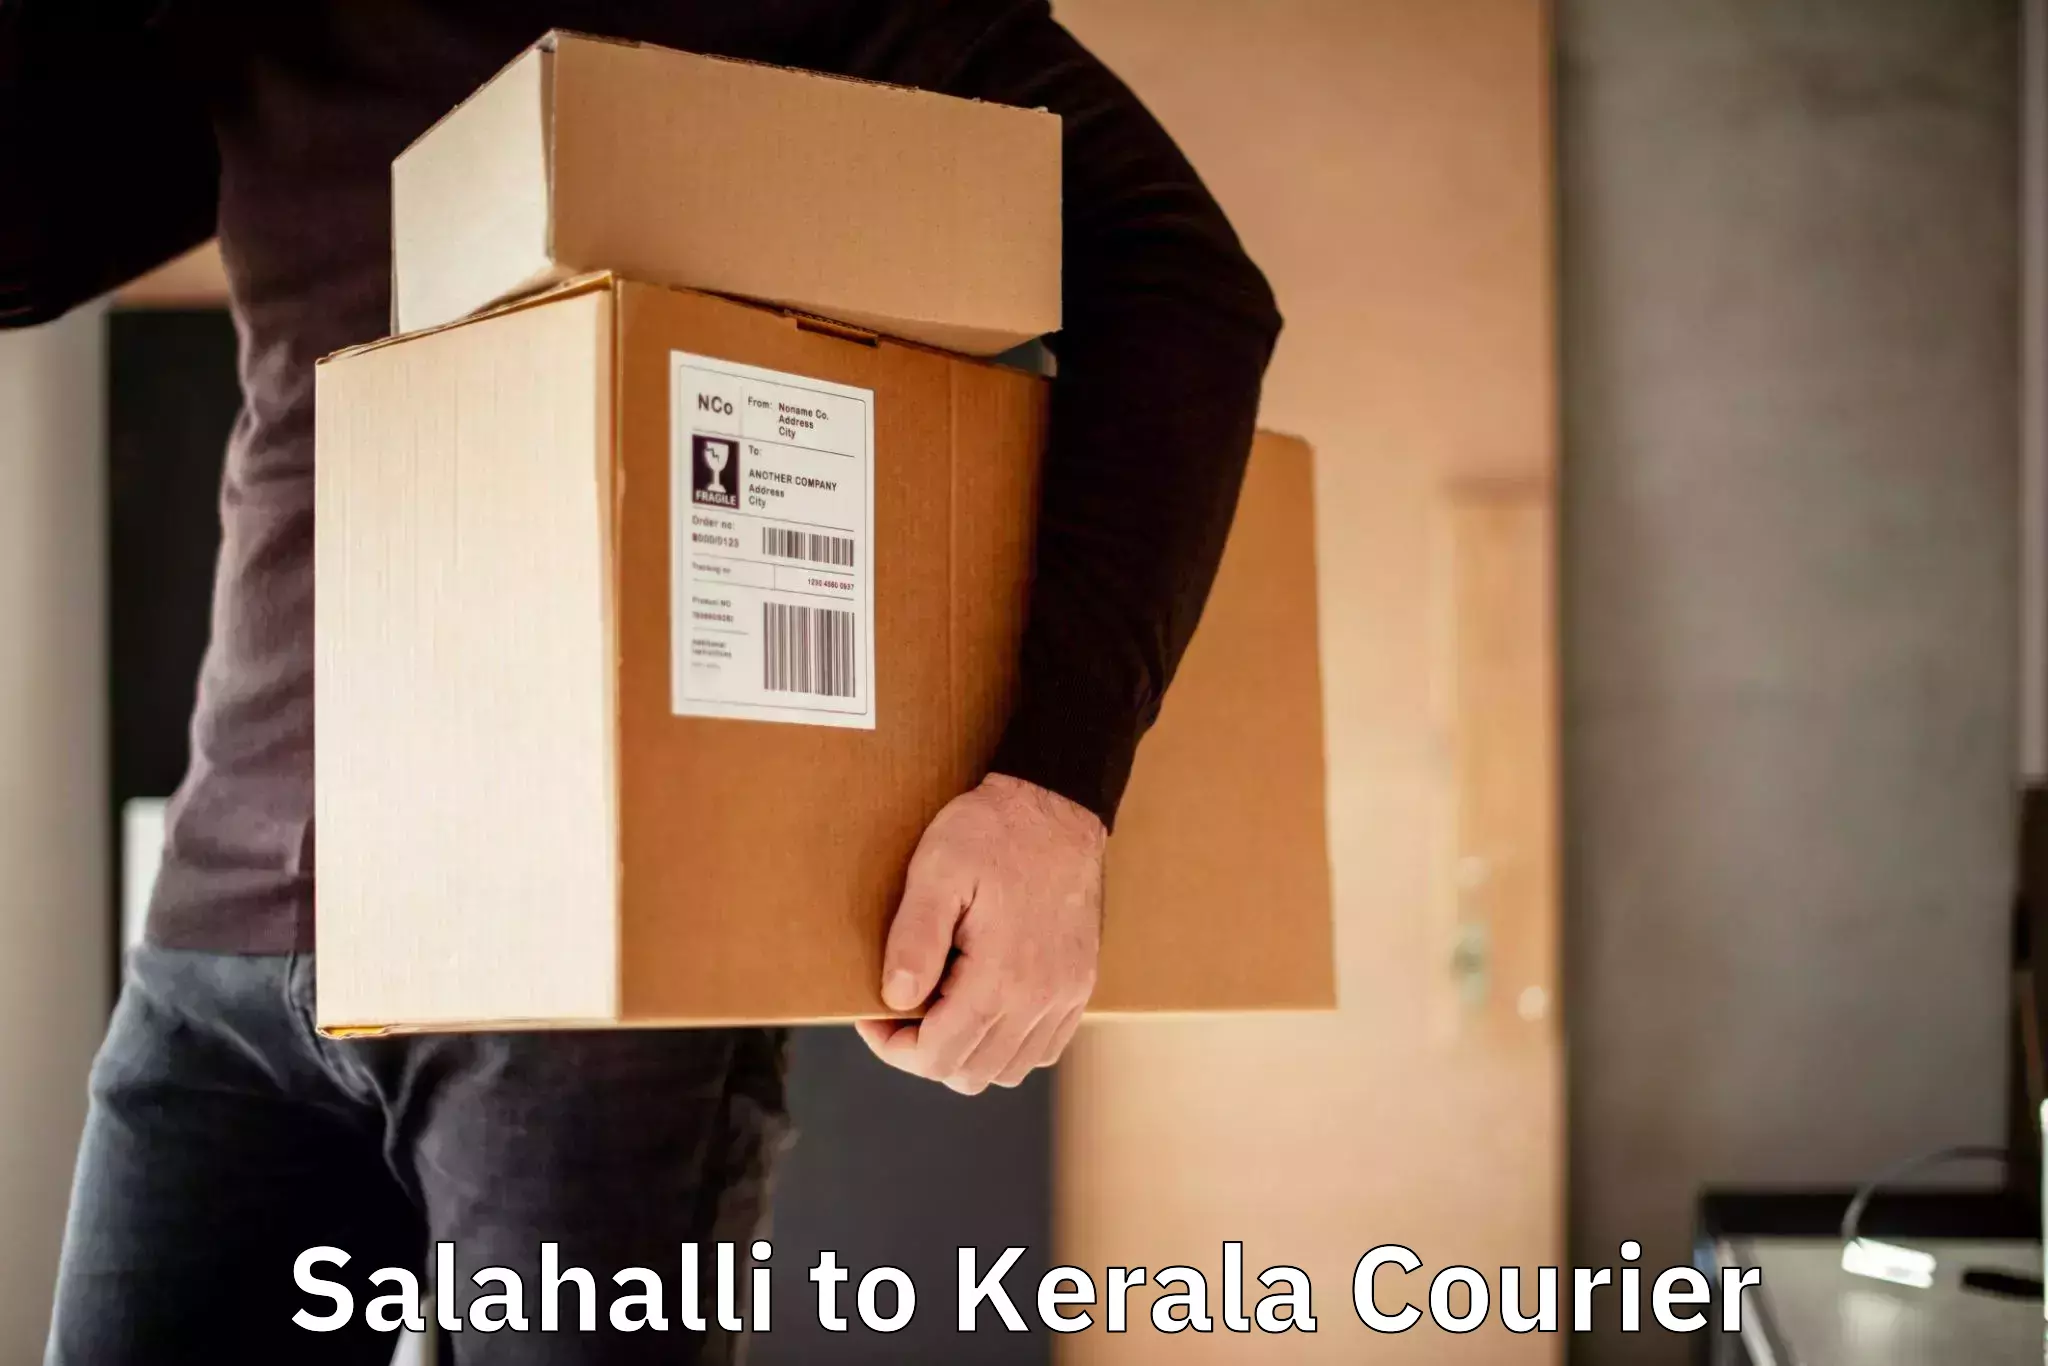 Courier app Salahalli to Kuthiathode